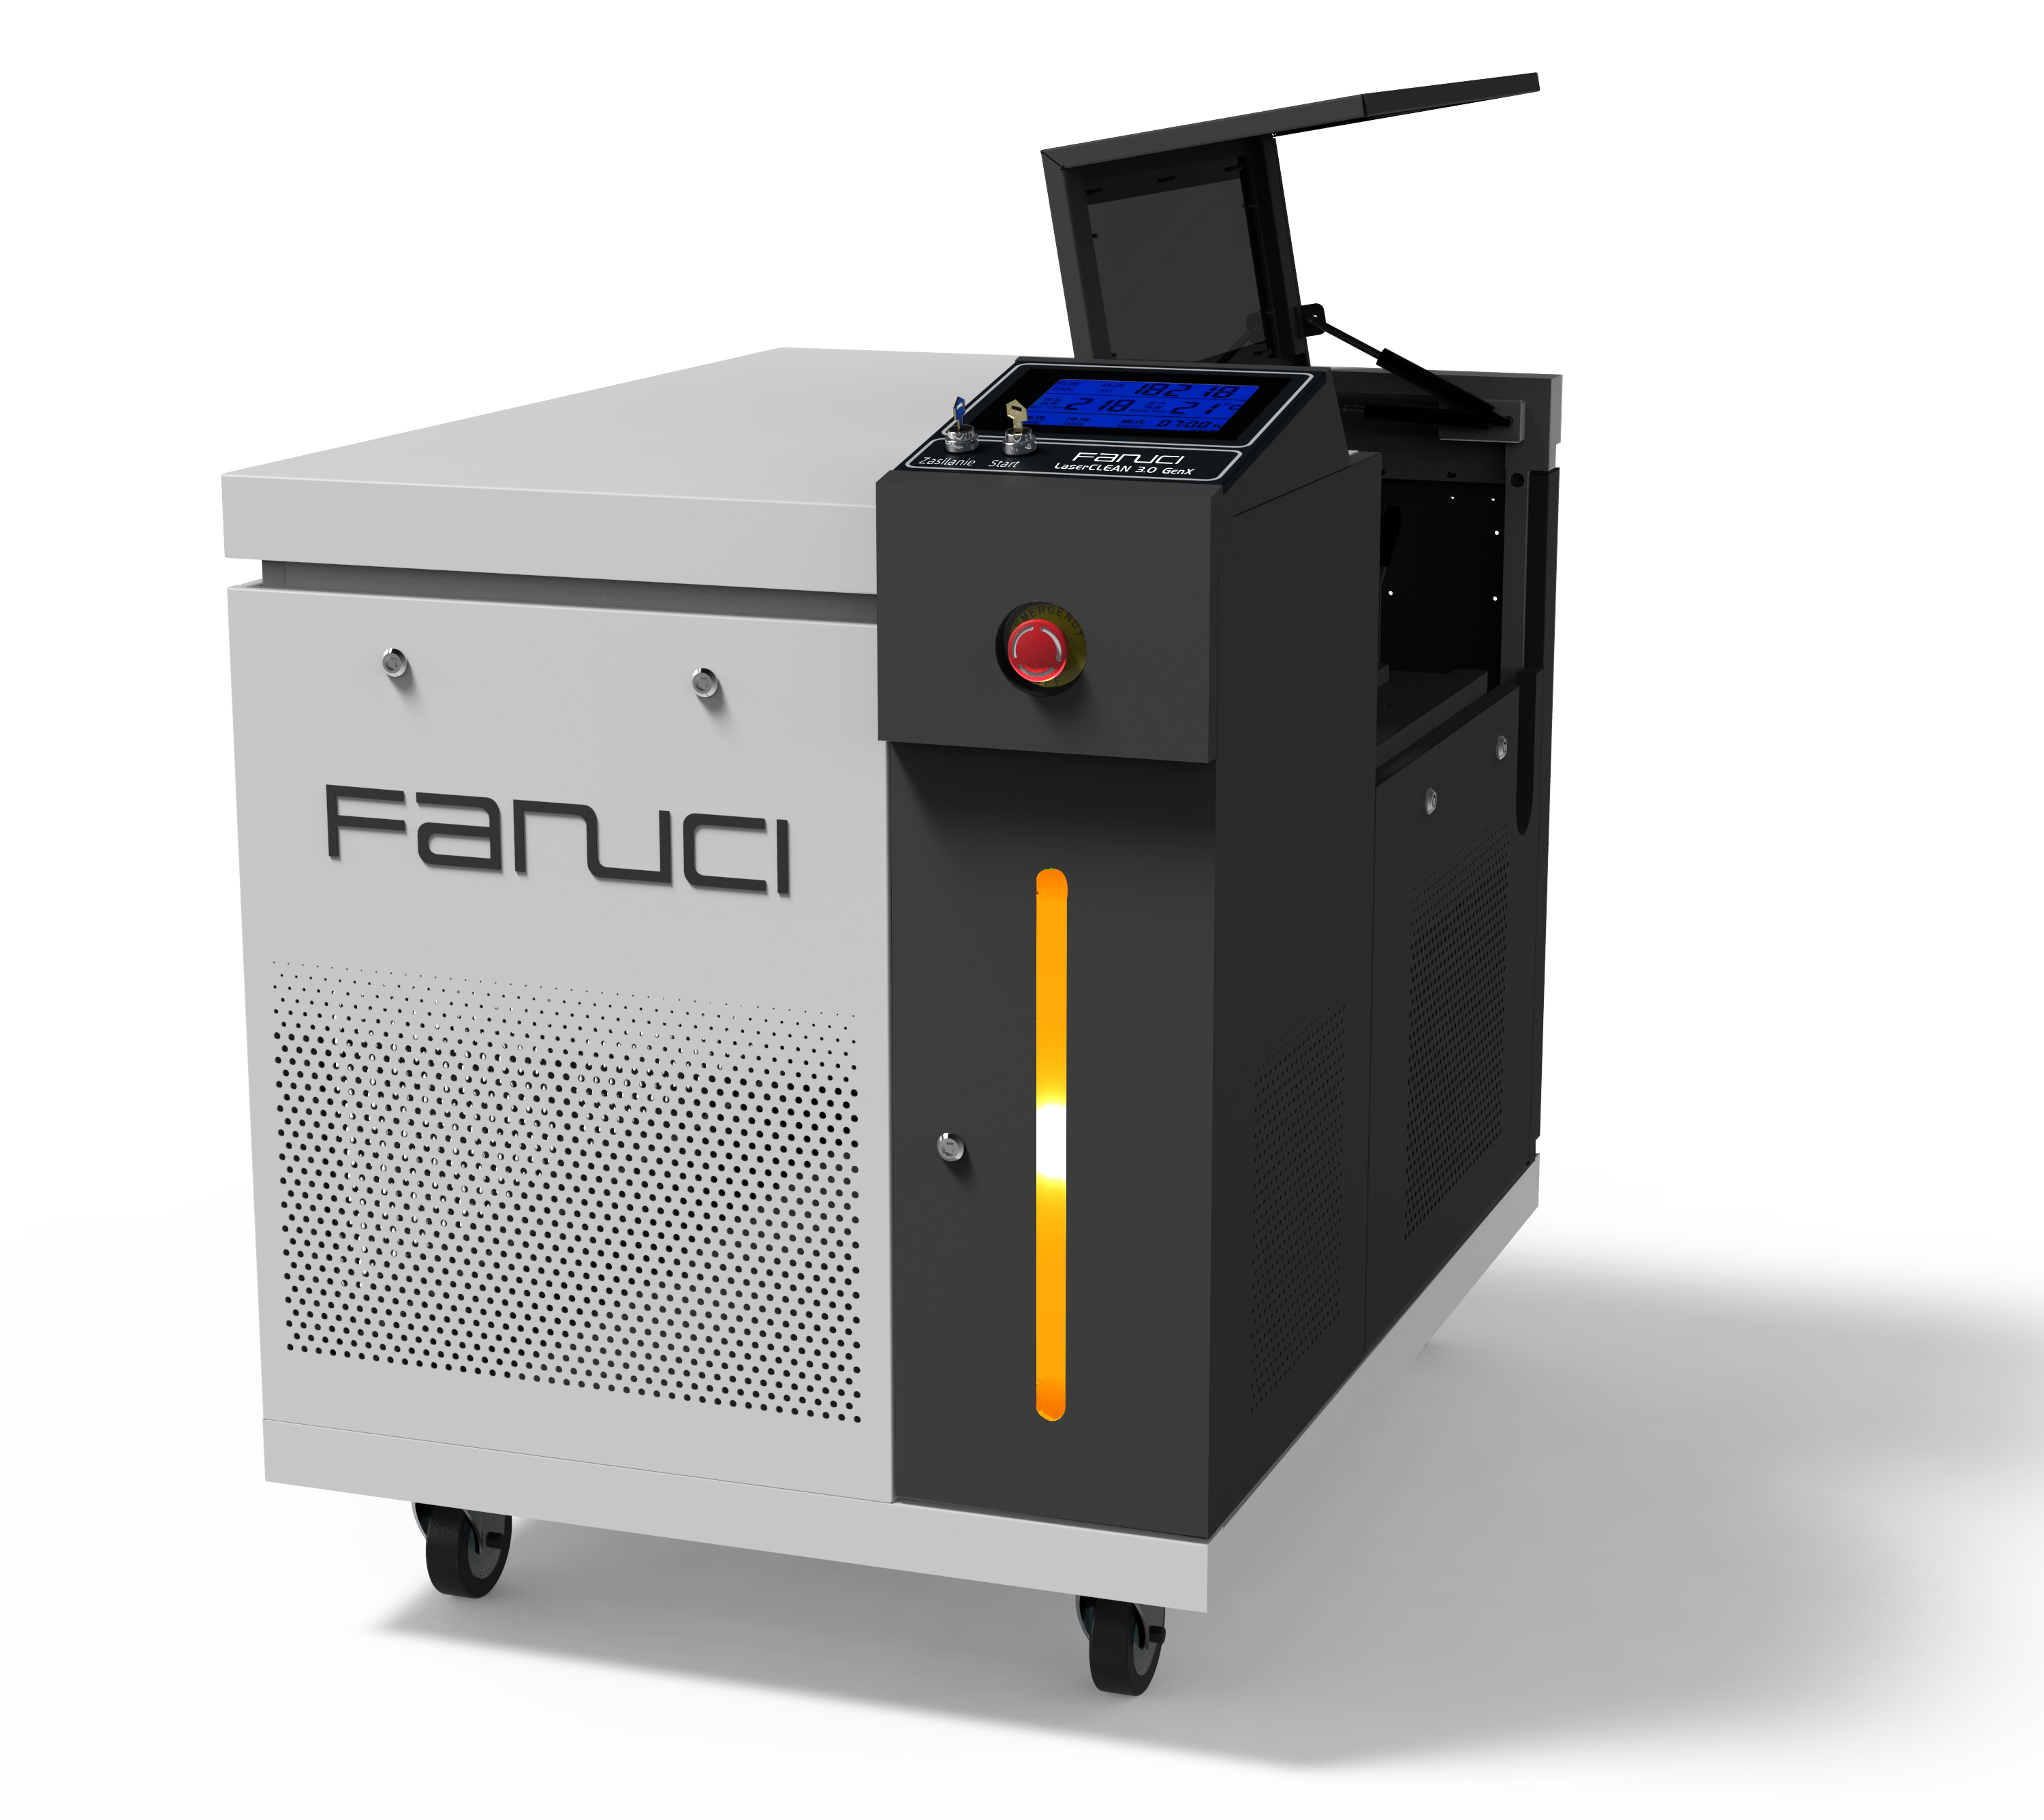 FANUCI® Pro kompakt lasersvejsemaskine fire i én vil blive sendt til Europa